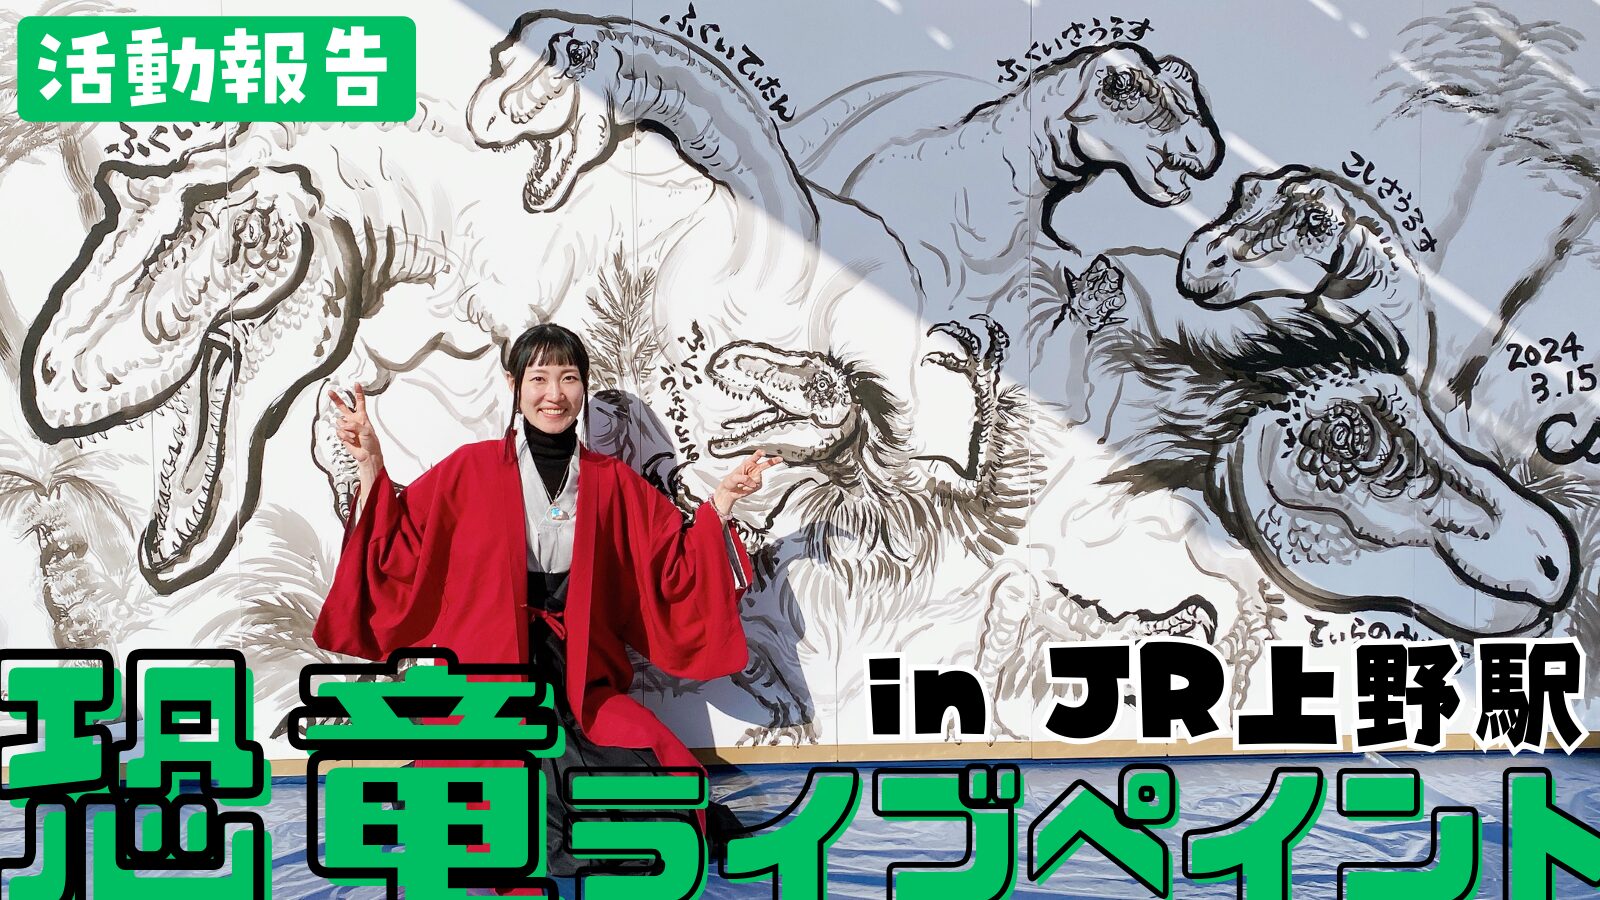 【活動報告】東京JR上野駅ポレイア広場で恐竜ライブペイント